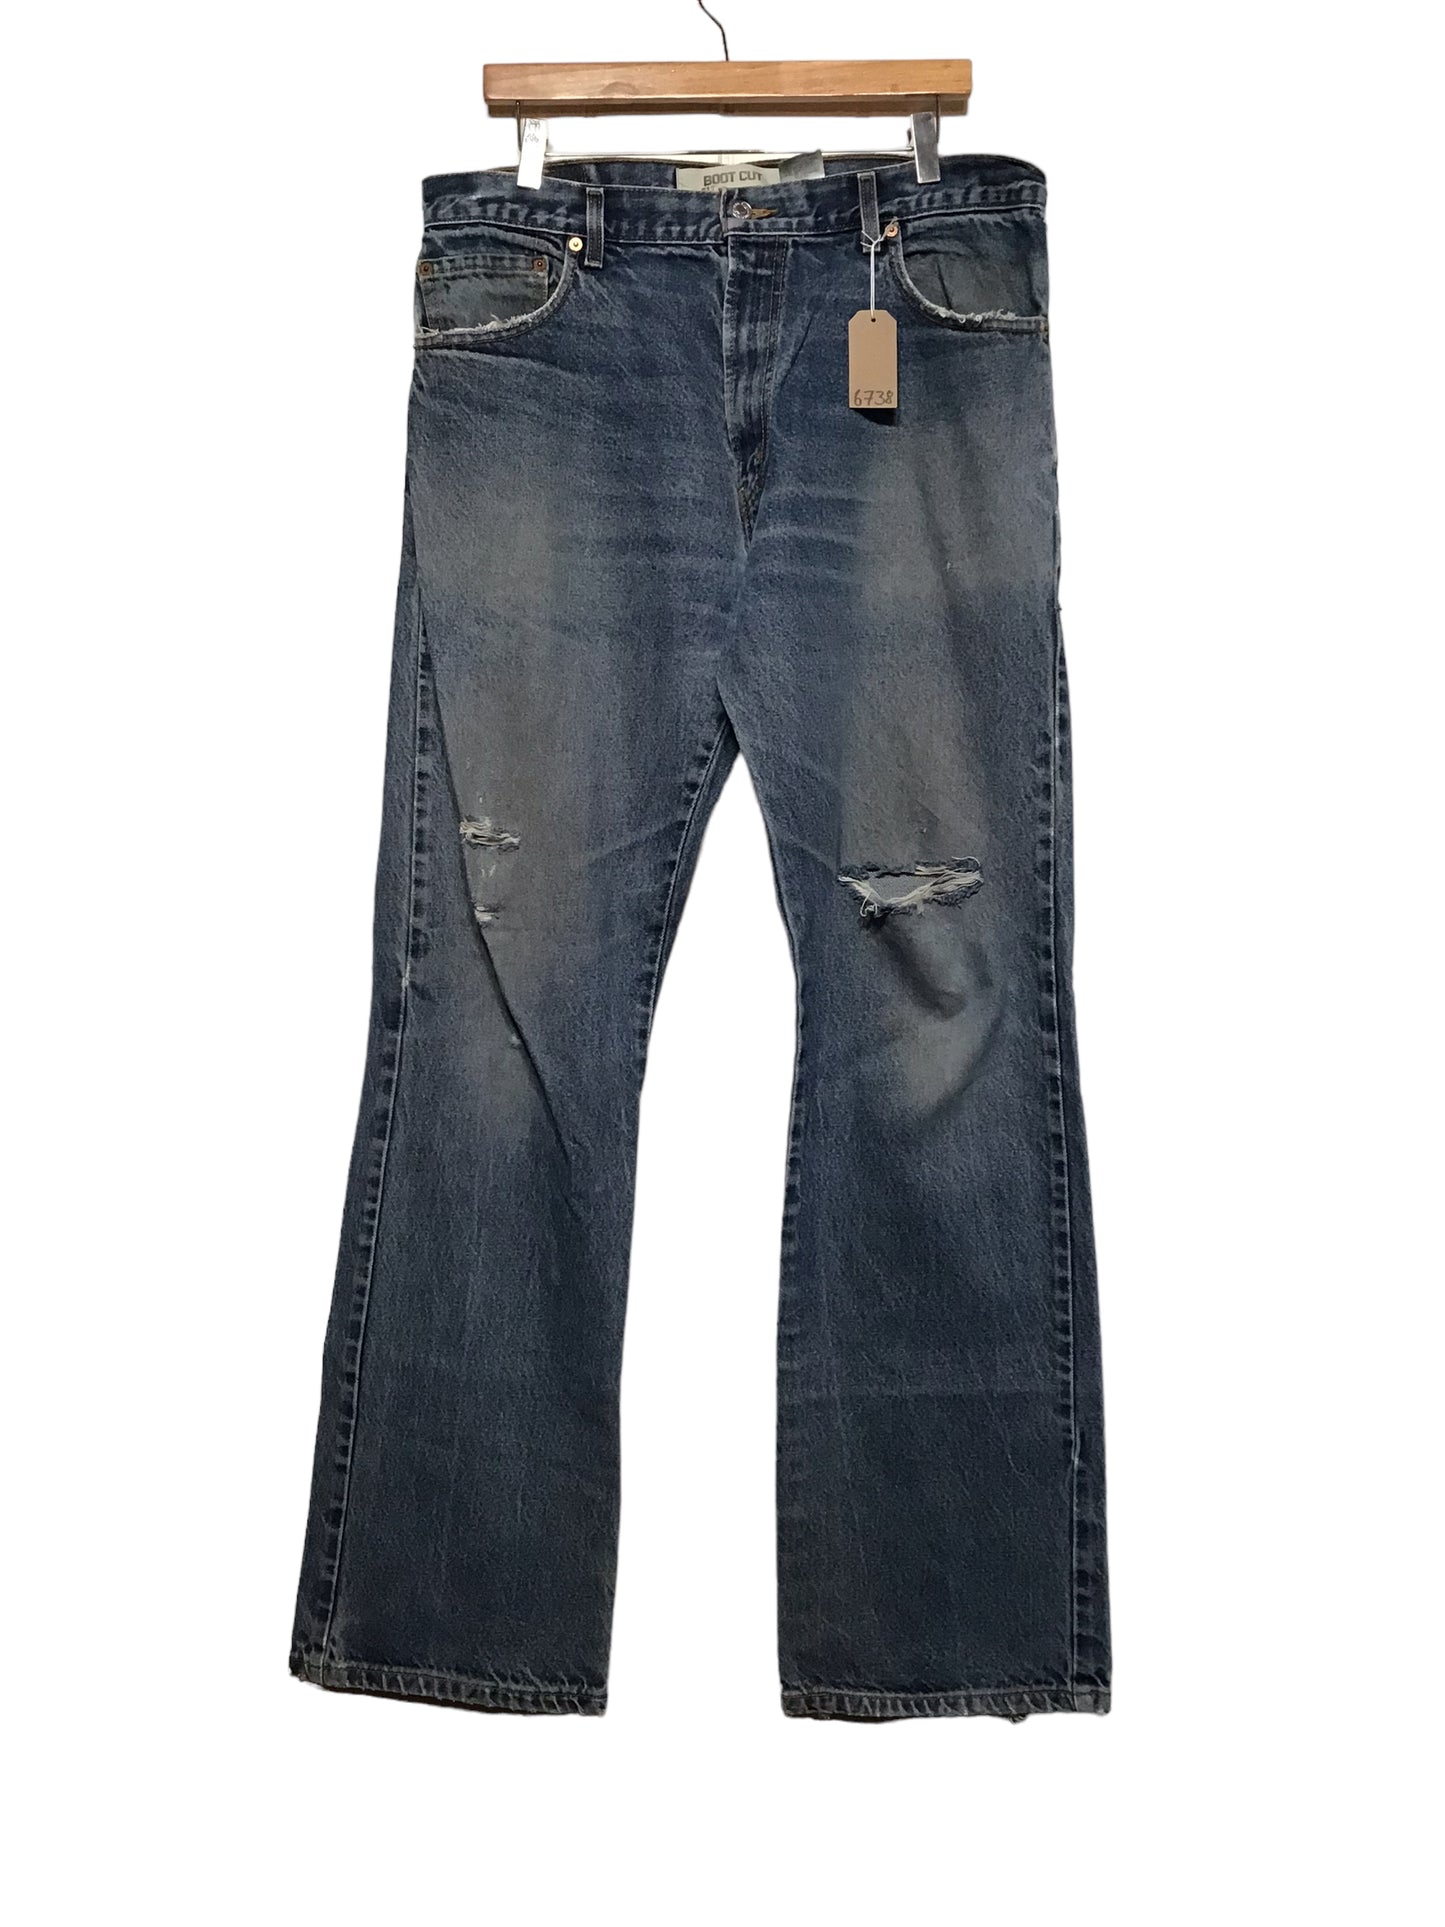 Levi 517 Jeans (36x34)